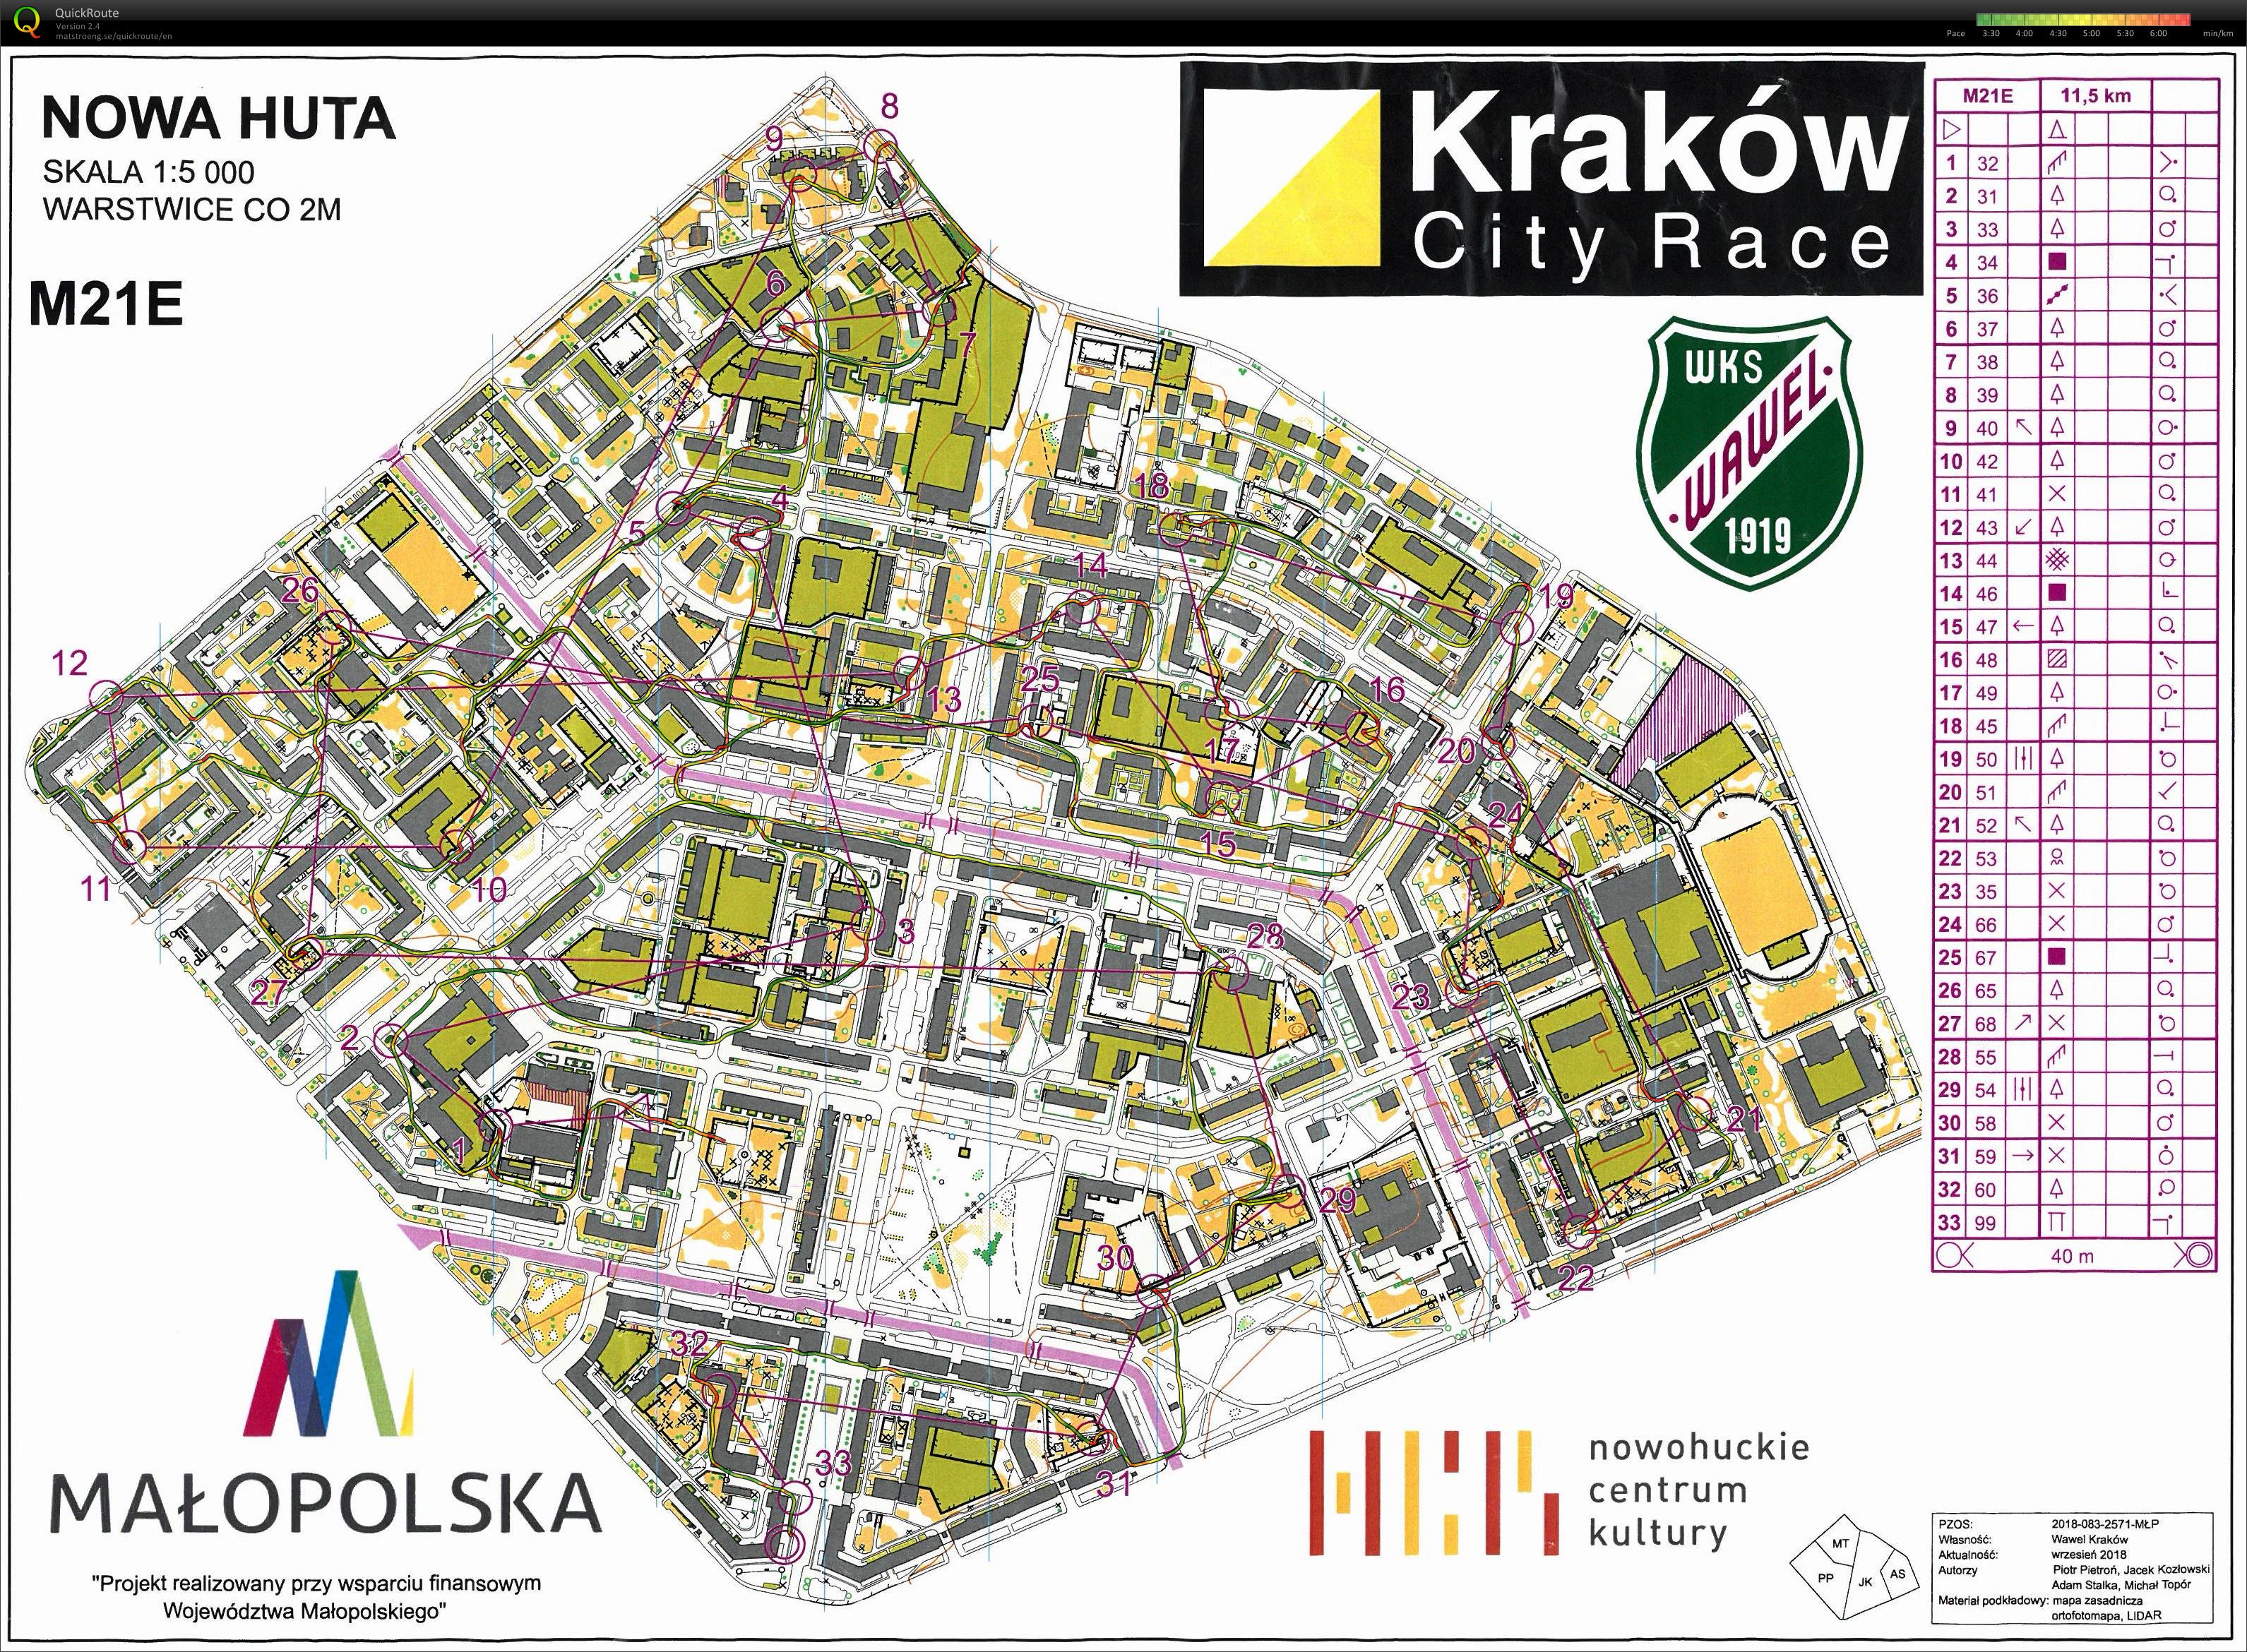 Kraków City Race - Nowa Huta (21.10.2018)